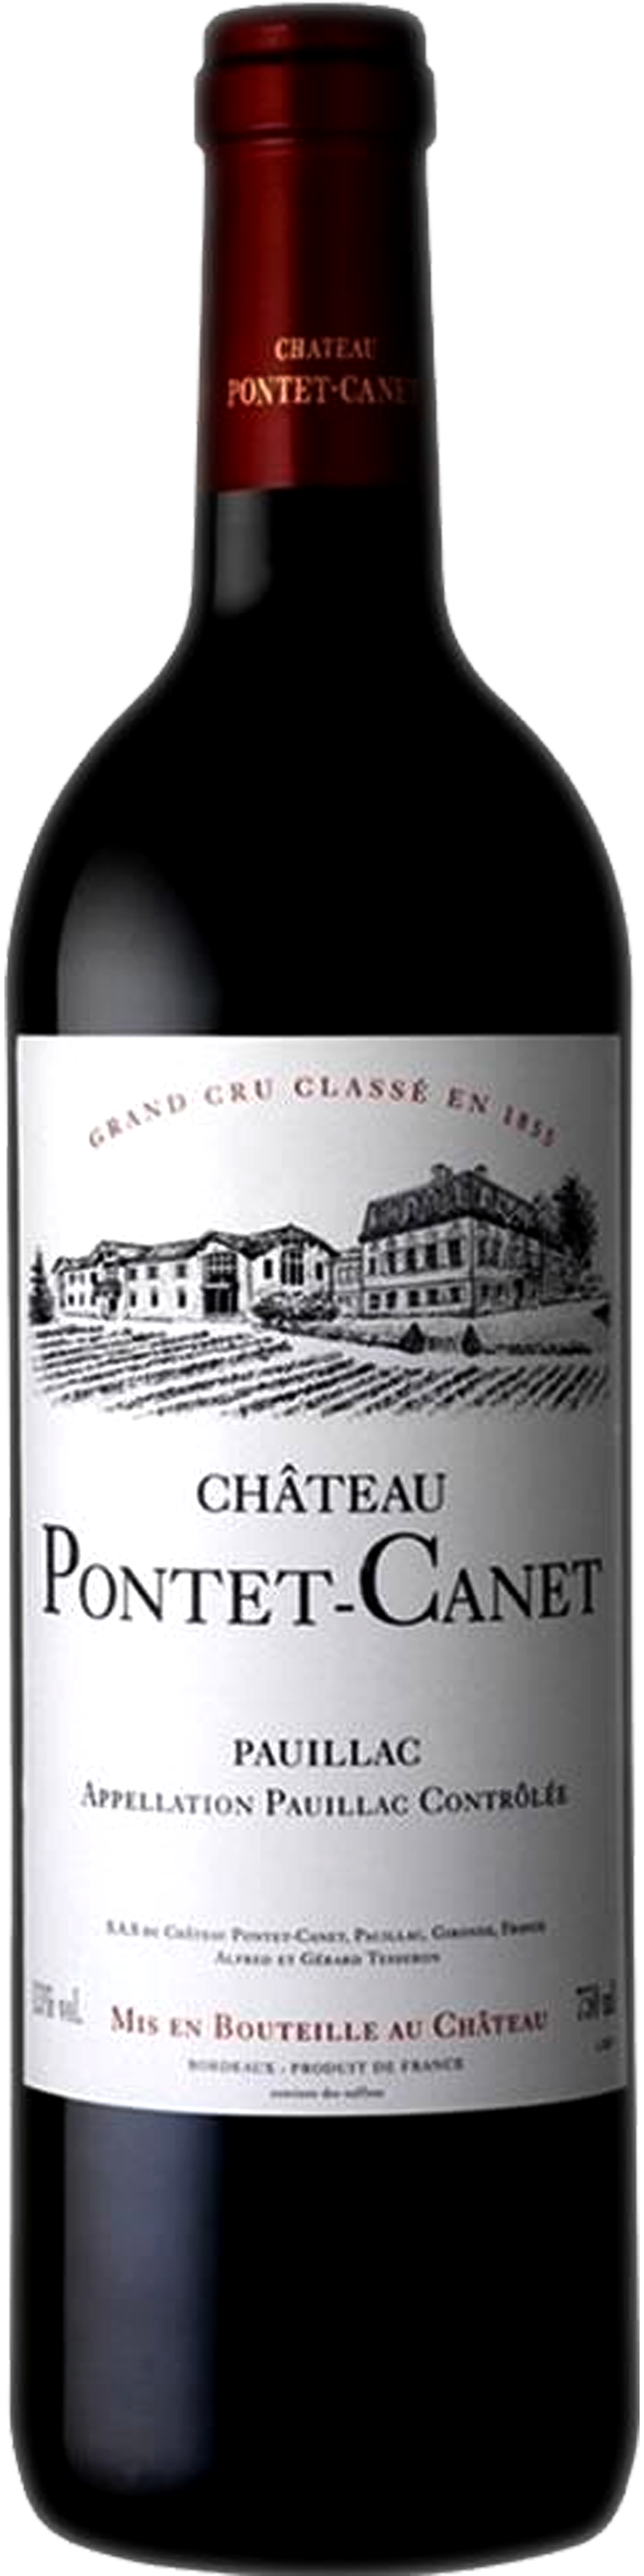 Bottle shot of 2006 Château Pontet Canet, 5ème Cru Pauillac